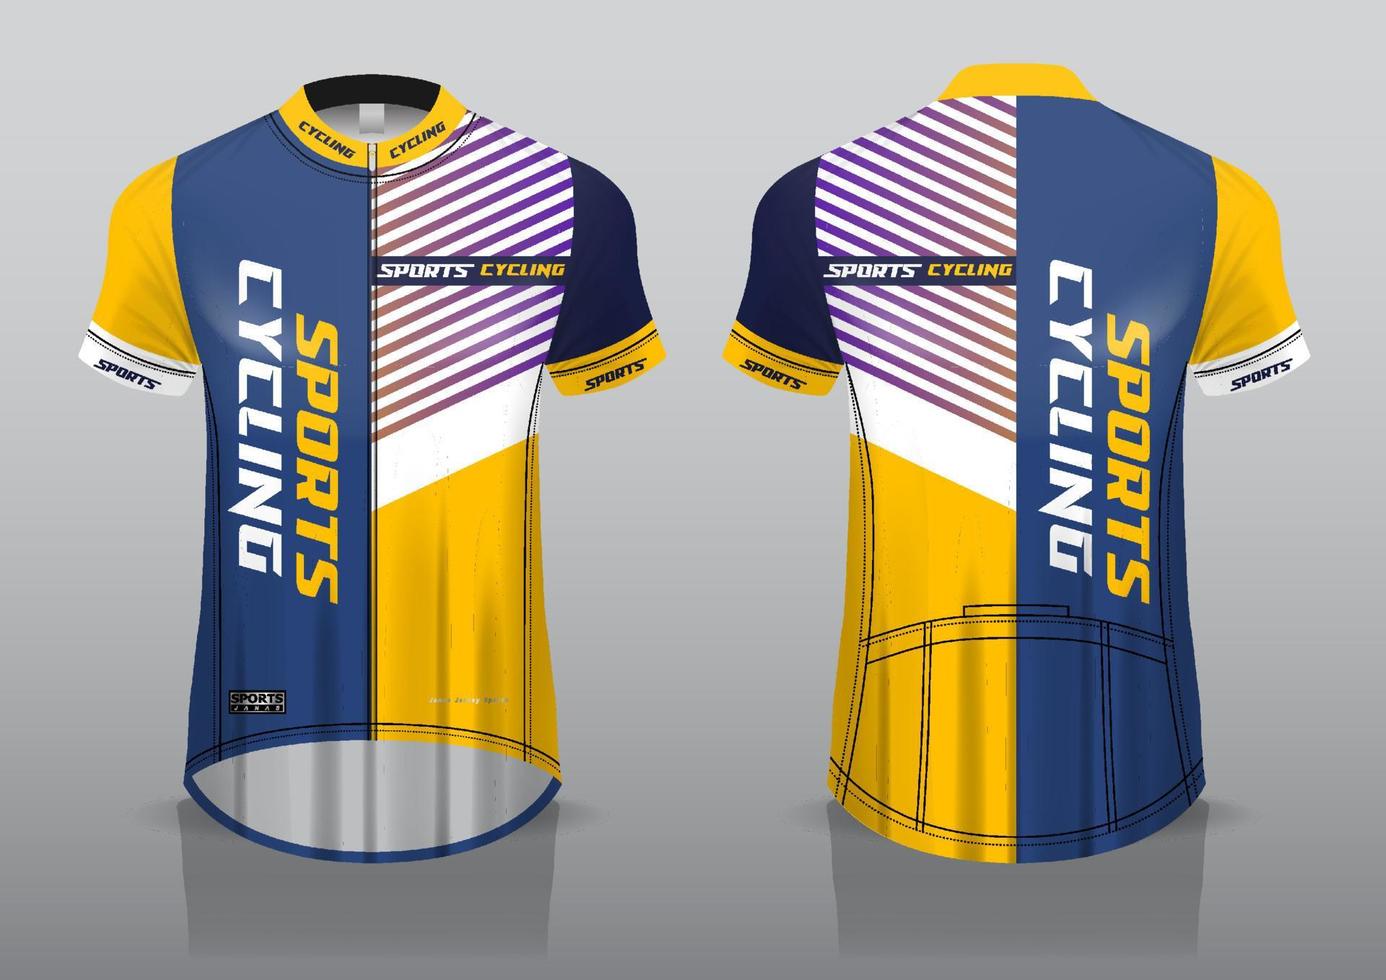 design de jersey para ciclismo, vista frontal e traseira e fácil de editar e imprimir em tecido, roupas esportivas para equipes de ciclismo vetor